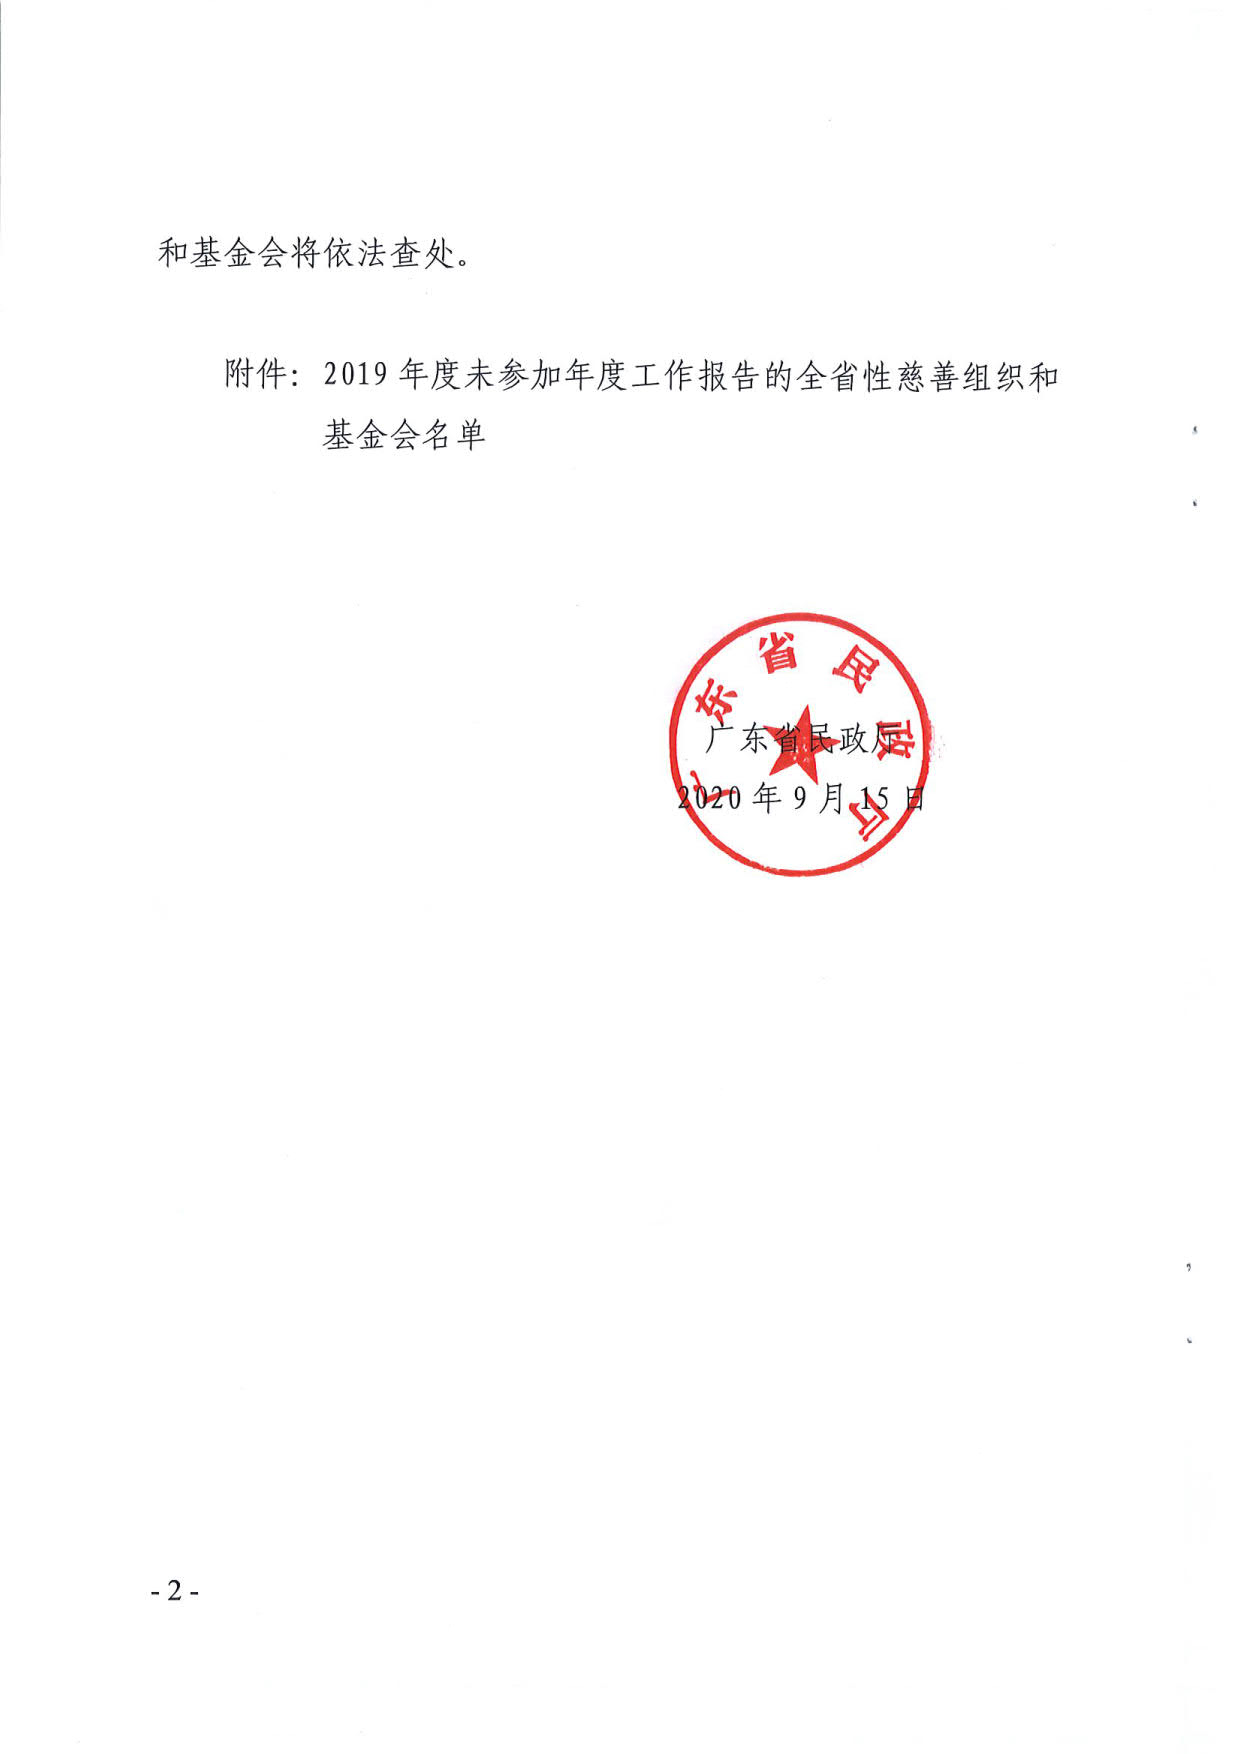 广东省民政厅关于全省性慈善组织和基金会2019年度工作报告情况的通报_2.jpg